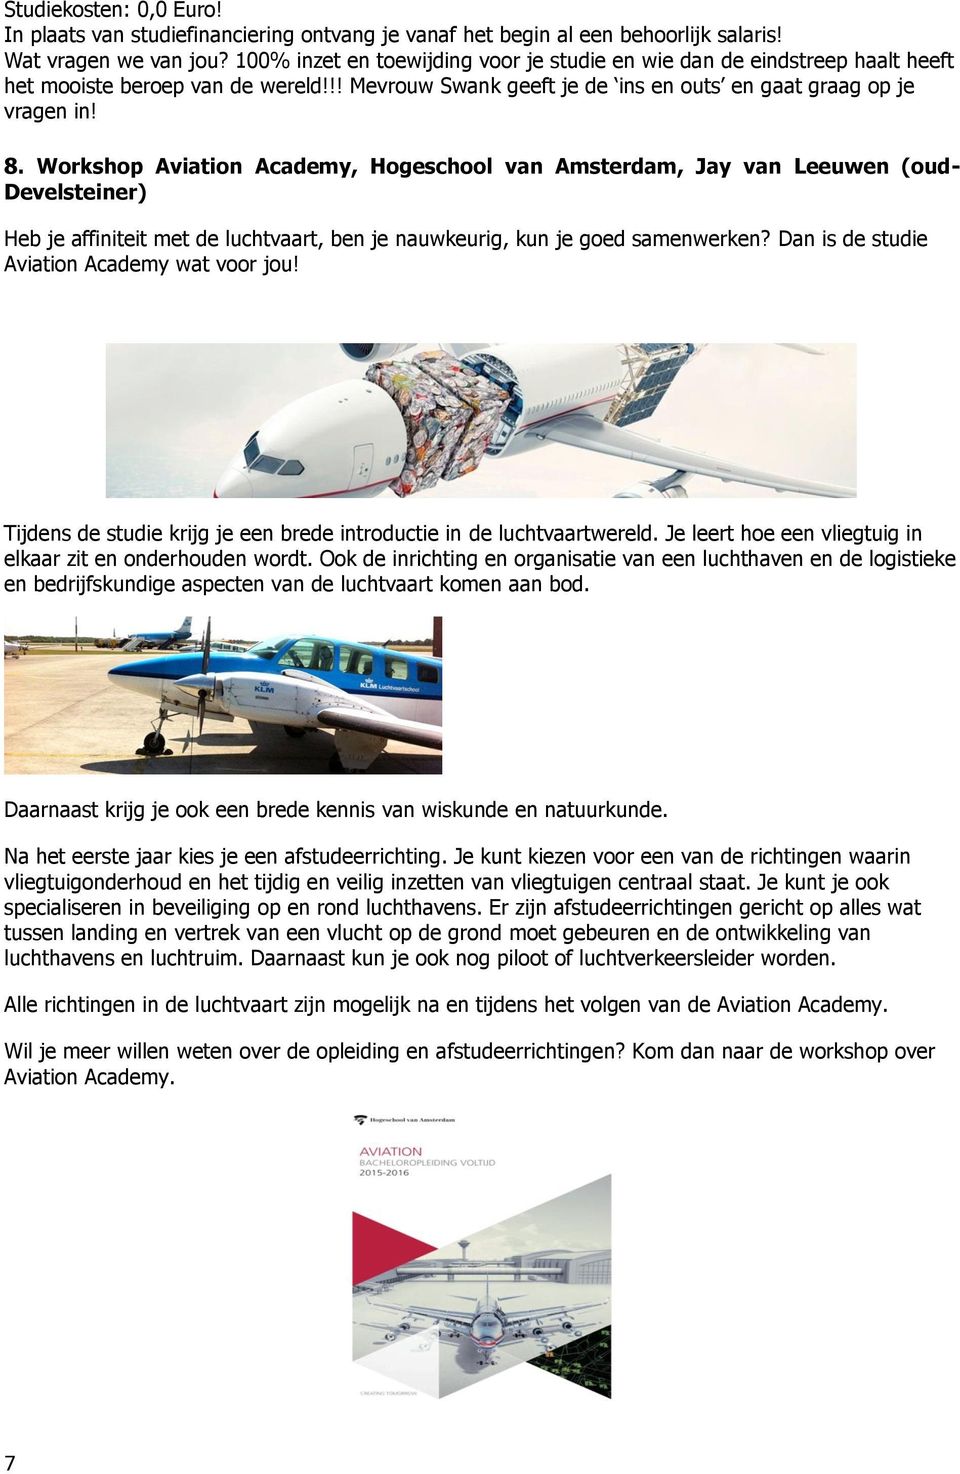 Workshop Aviation Academy, Hogeschool van Amsterdam, Jay van Leeuwen (oud- Develsteiner) Heb je affiniteit met de luchtvaart, ben je nauwkeurig, kun je goed samenwerken?